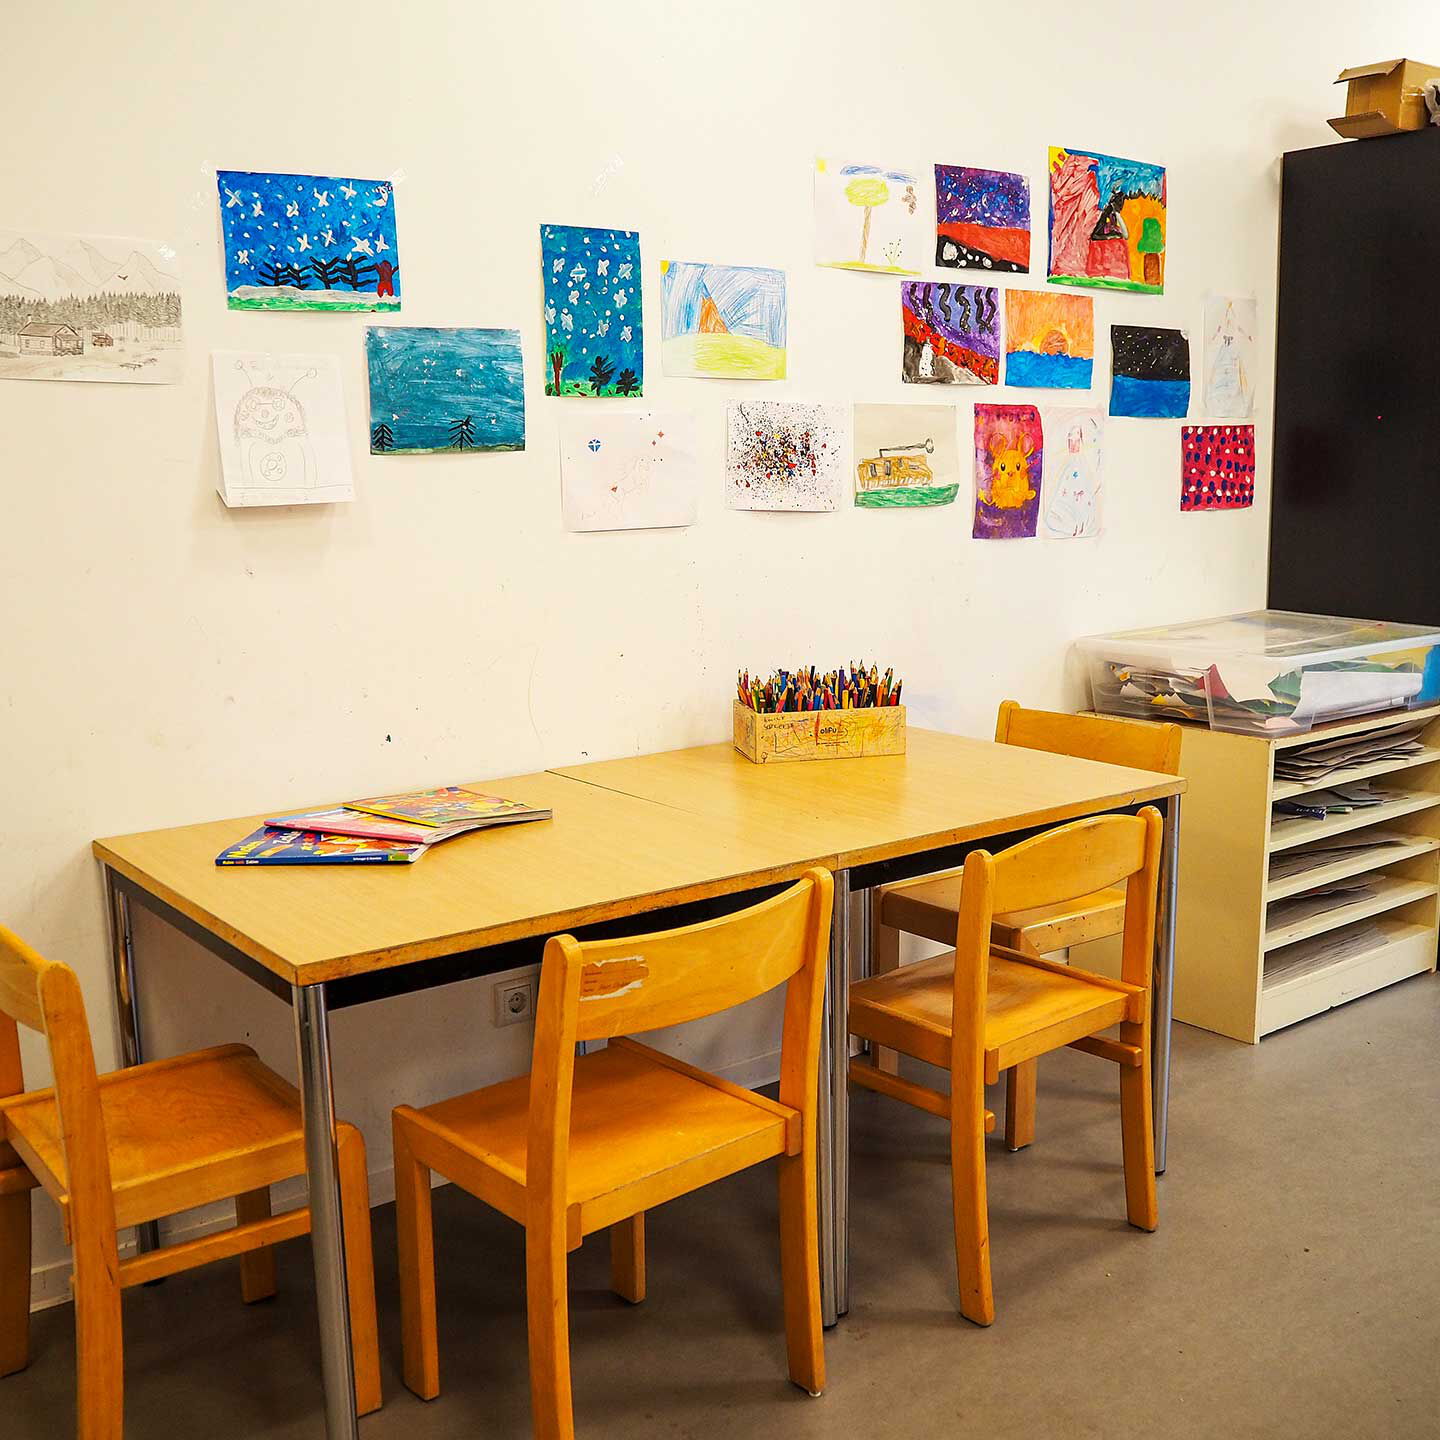 An der Wand stehen zwei Tische mit 4 Stühlen auf denen Buntstifte in einer Schachtel stehen. An der Wand hängen viele selbst gemalte Bilder.